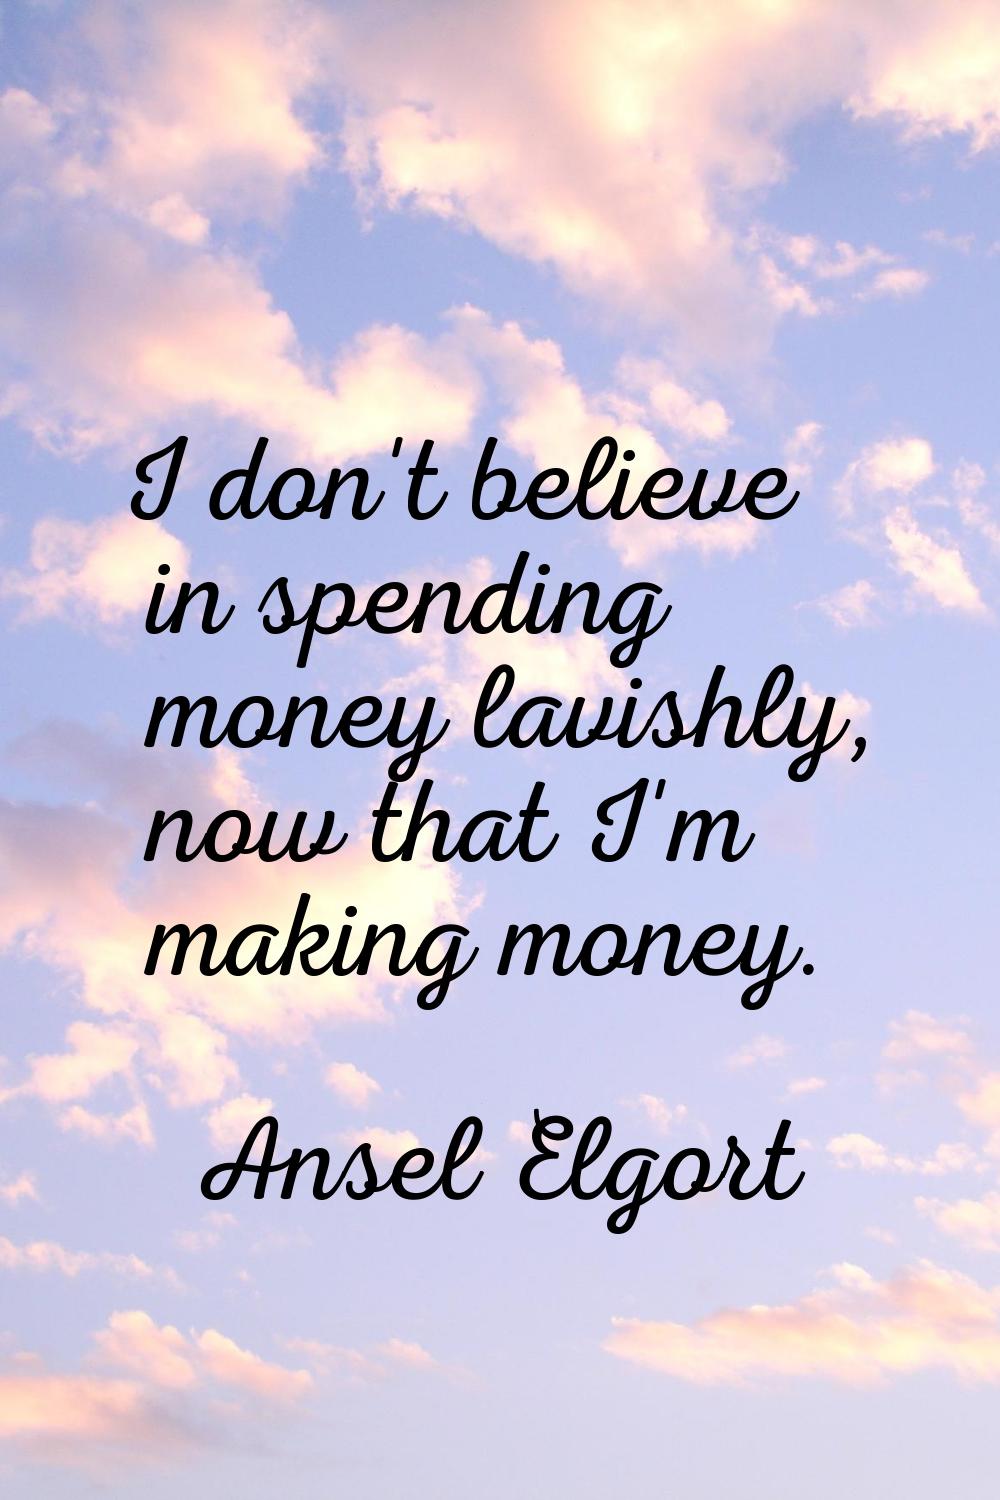 I don't believe in spending money lavishly, now that I'm making money.